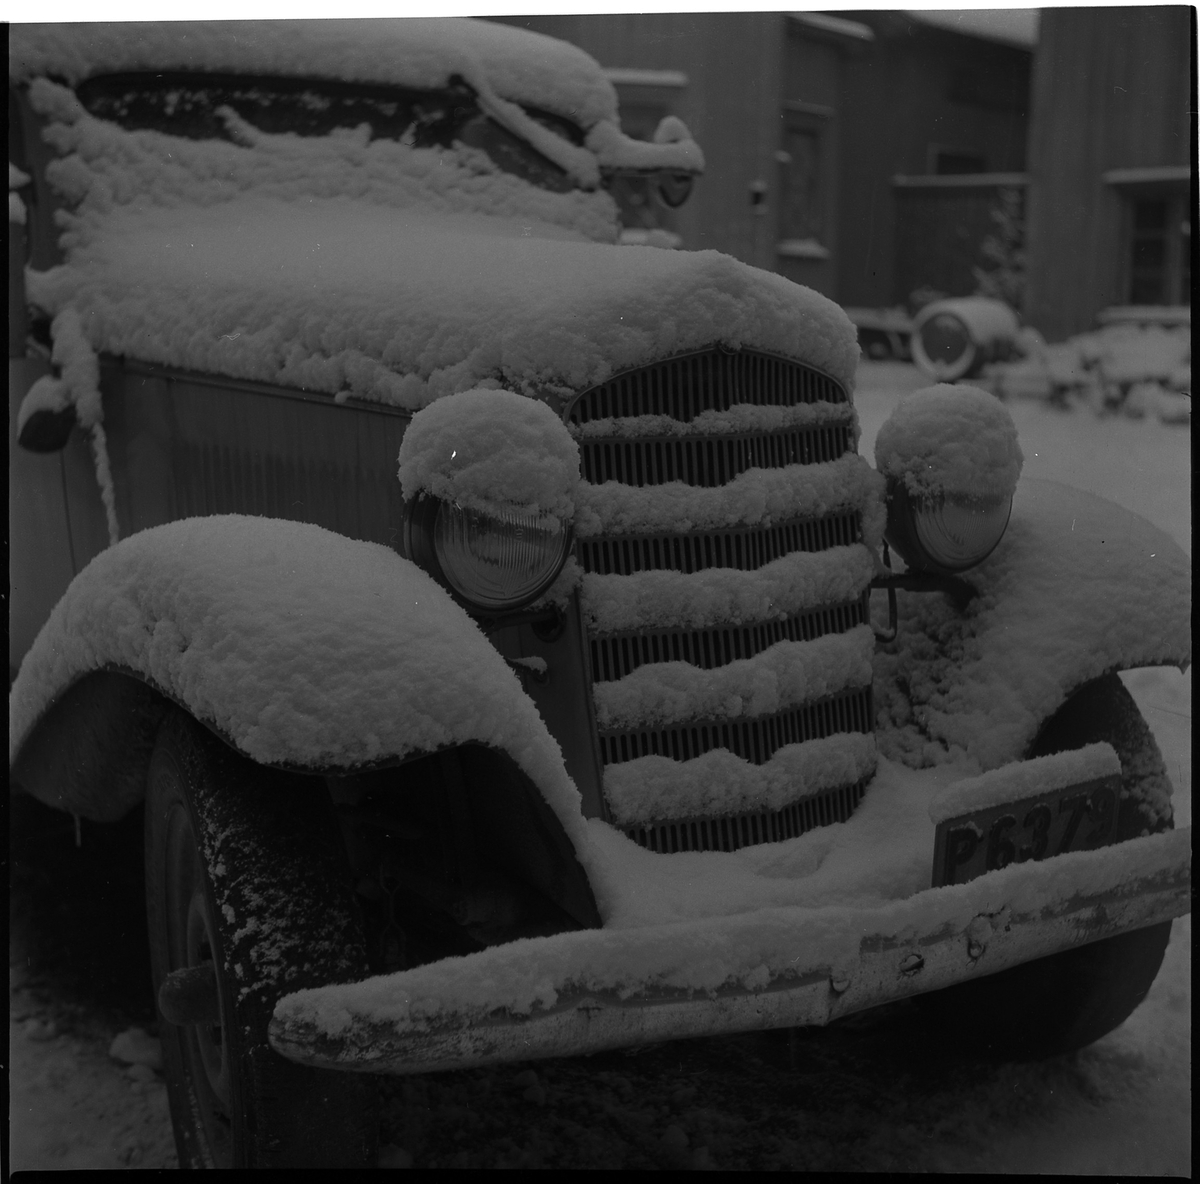 Bil på gården i kv Jägaren 11. Januari 1950